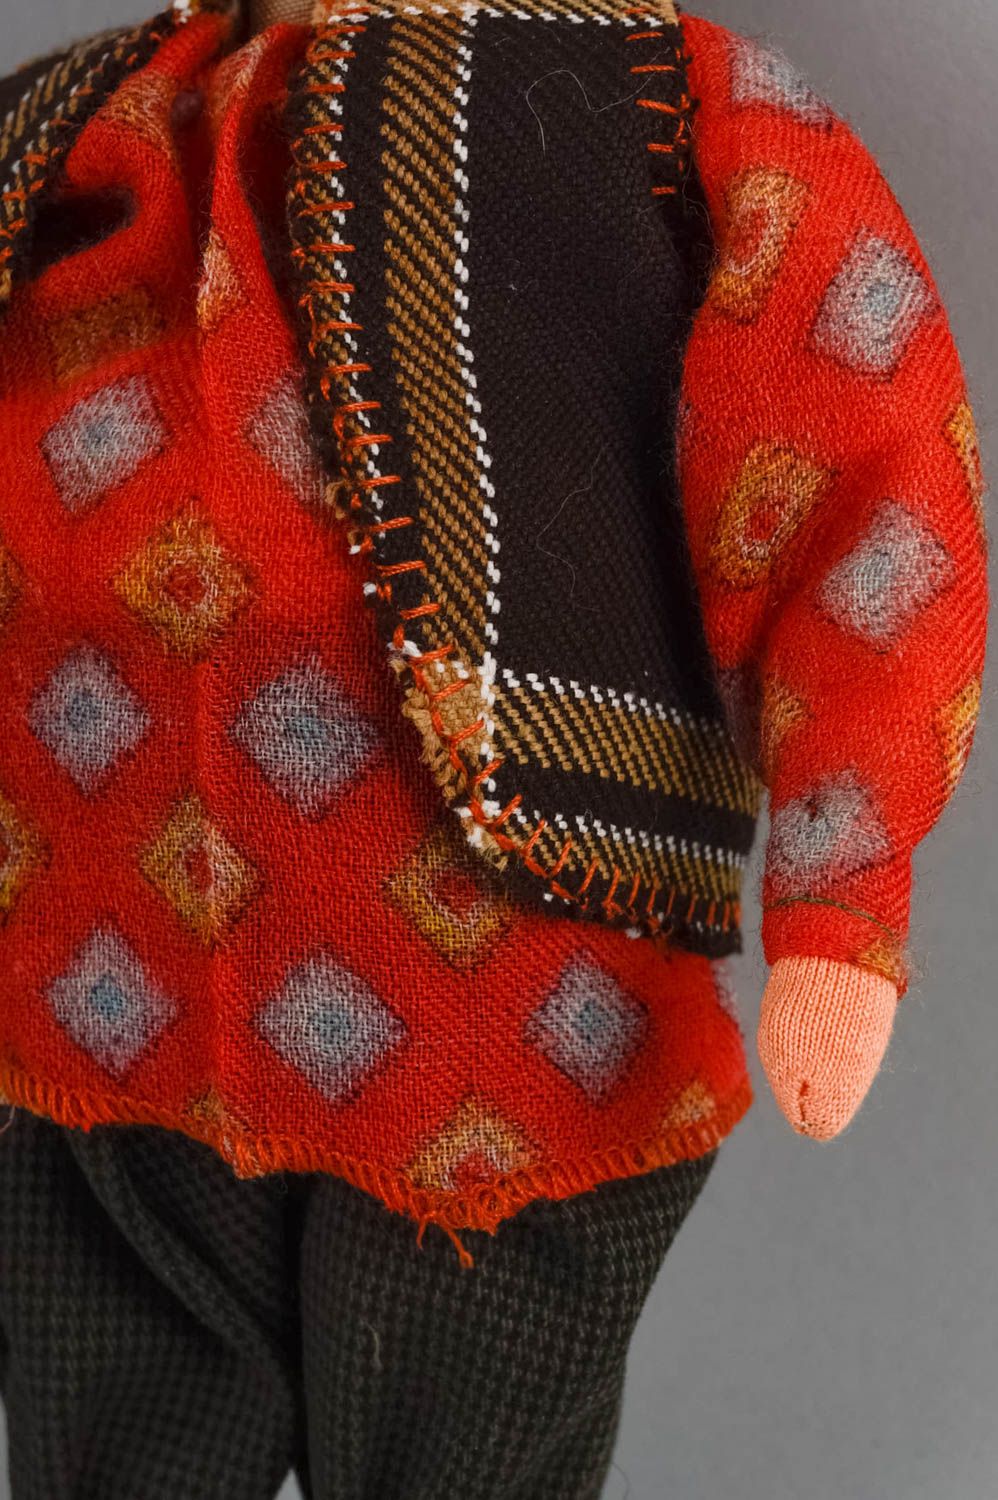 Коллекционная кукла мужчина в красном забавный небольшой для декора хэнд мейд фото 5